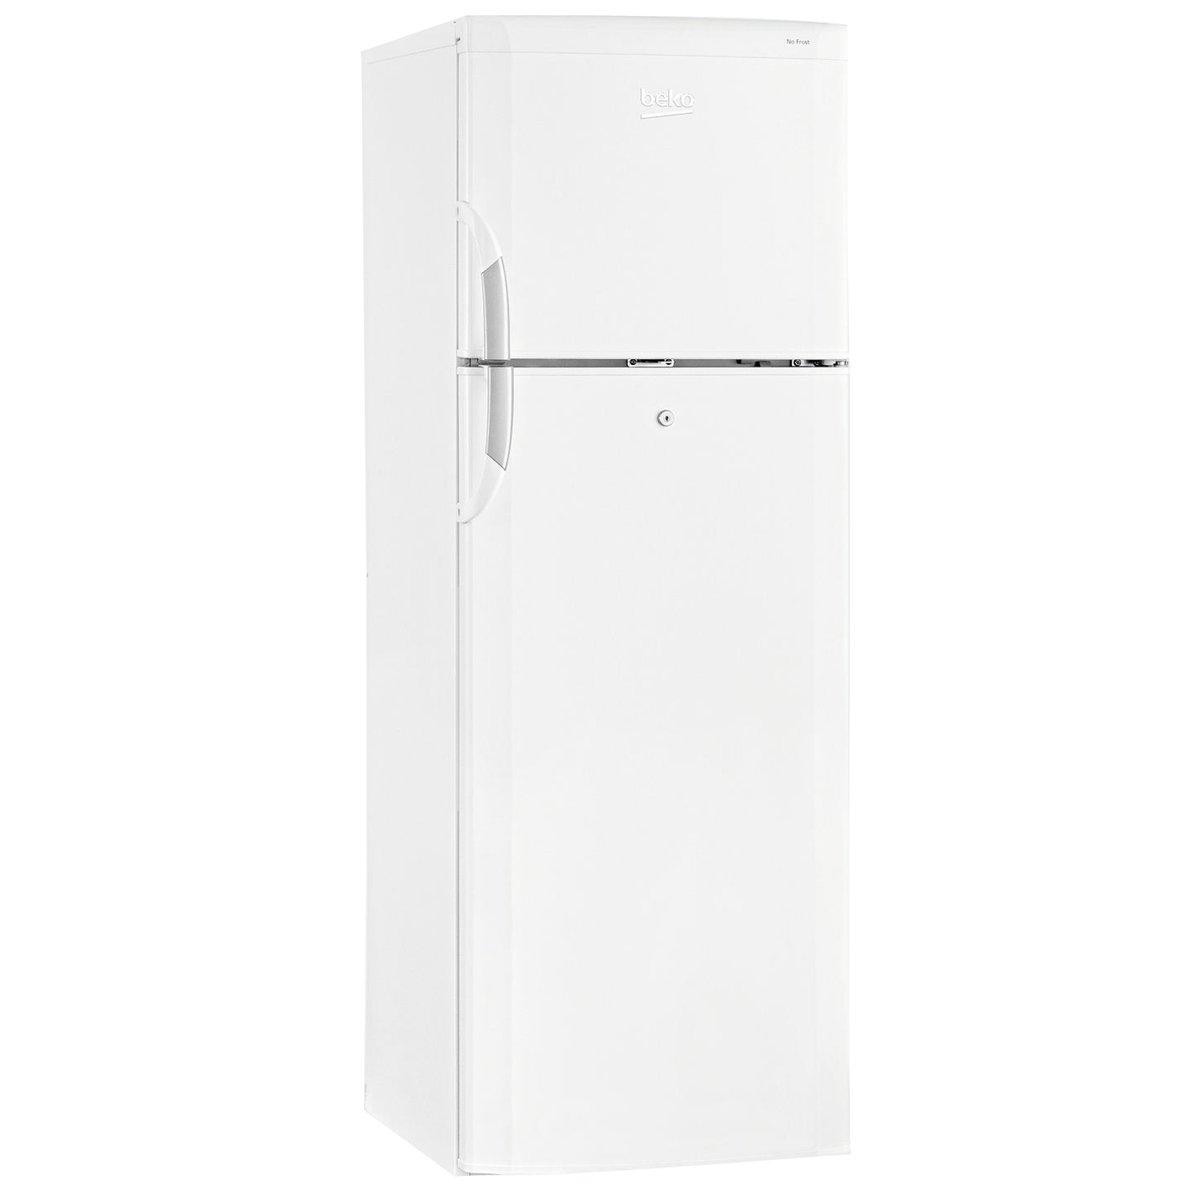 Beko Double Door Refrigerator DNE30001KL 300Ltr